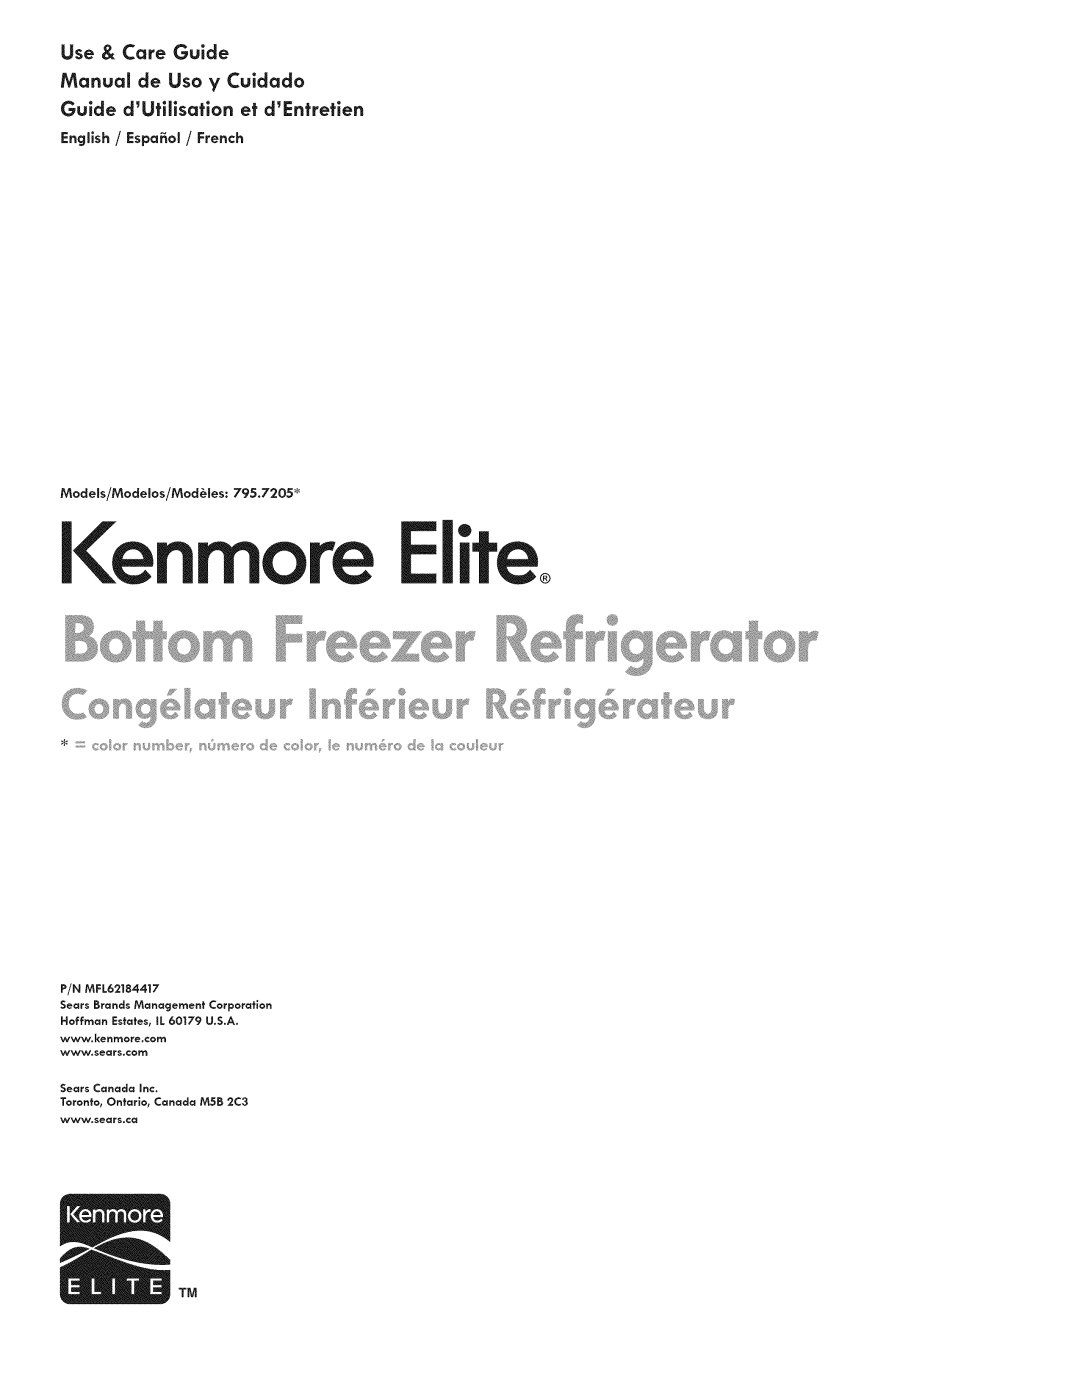 Kenmore 795.7205 manual Kenmore Elite, Use & Care Guide, Manual de Uso y Cuidado, Guide dUtiisafion ef dEnfretien 